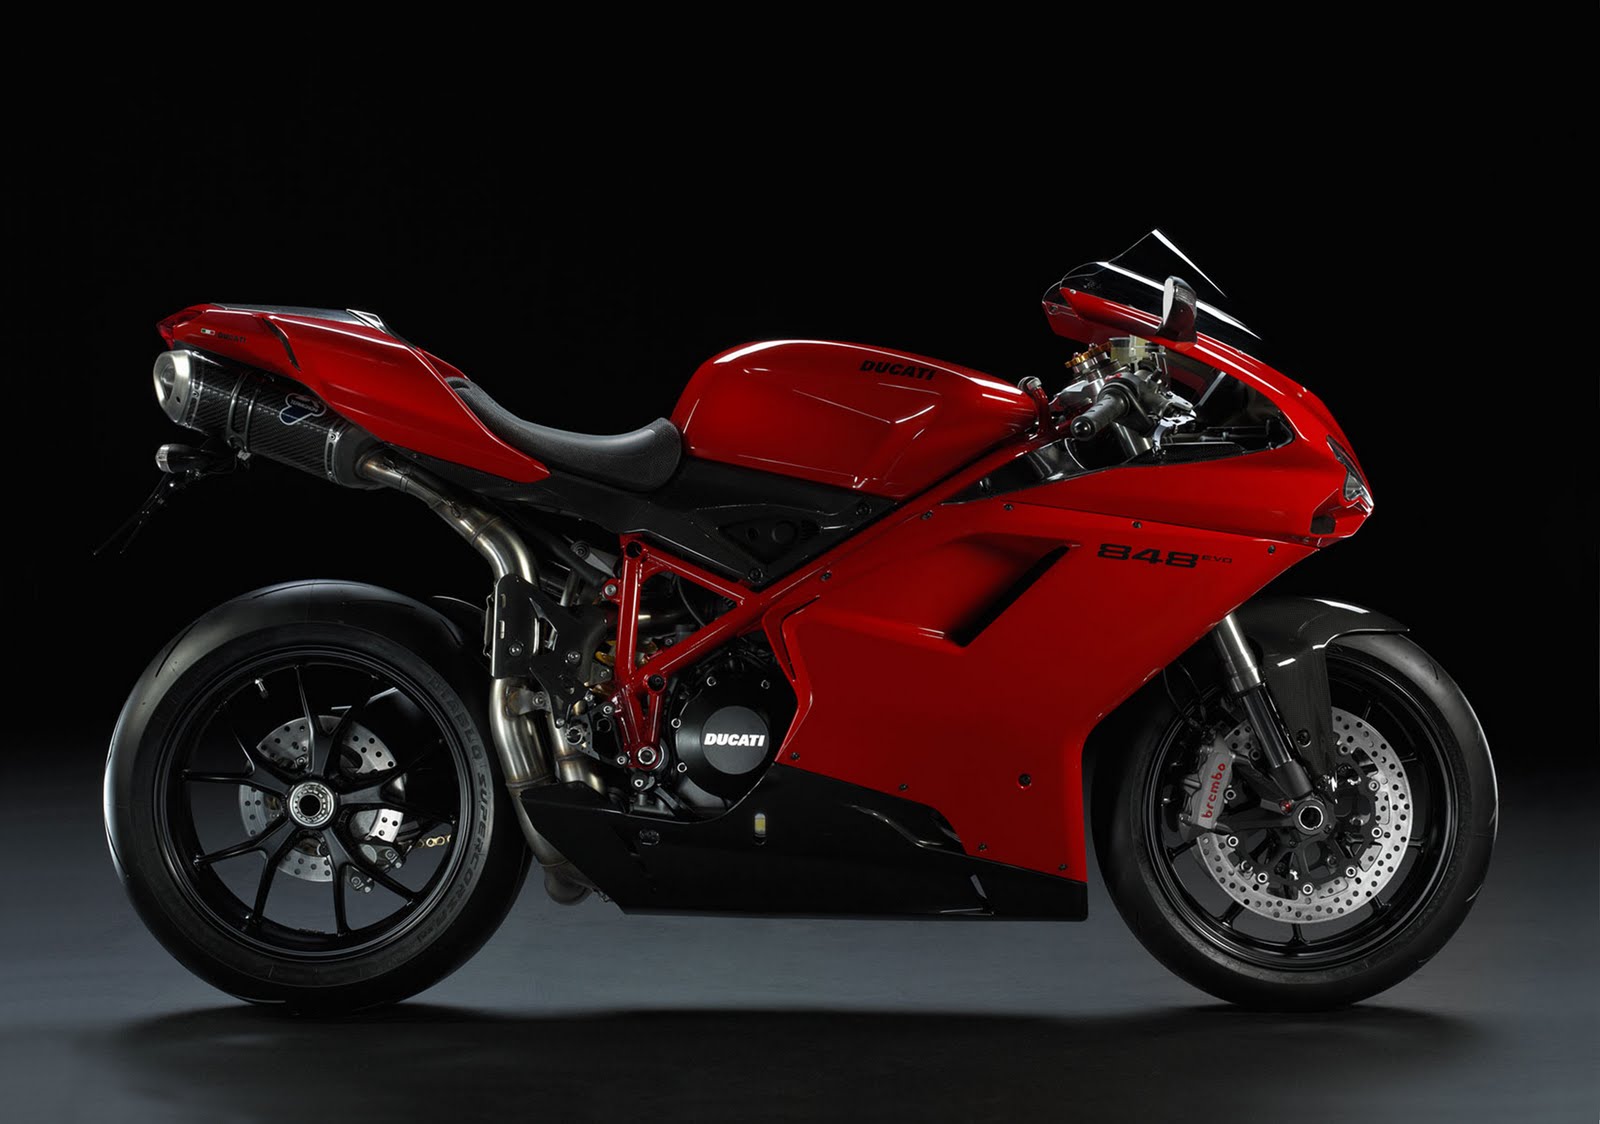 New Ducati 848 EVO, Read More